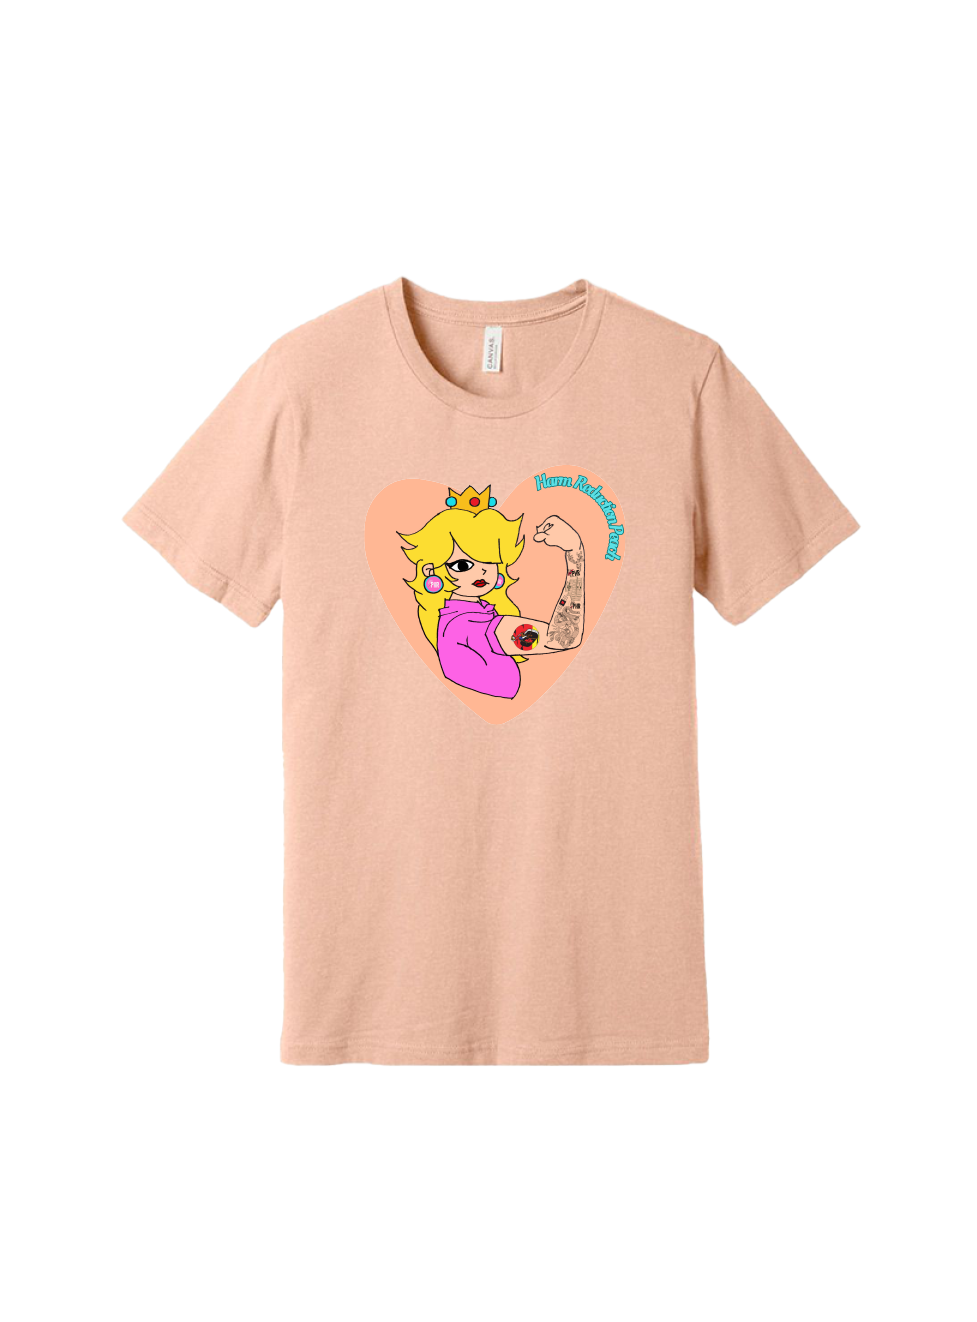 Peach t-shirt